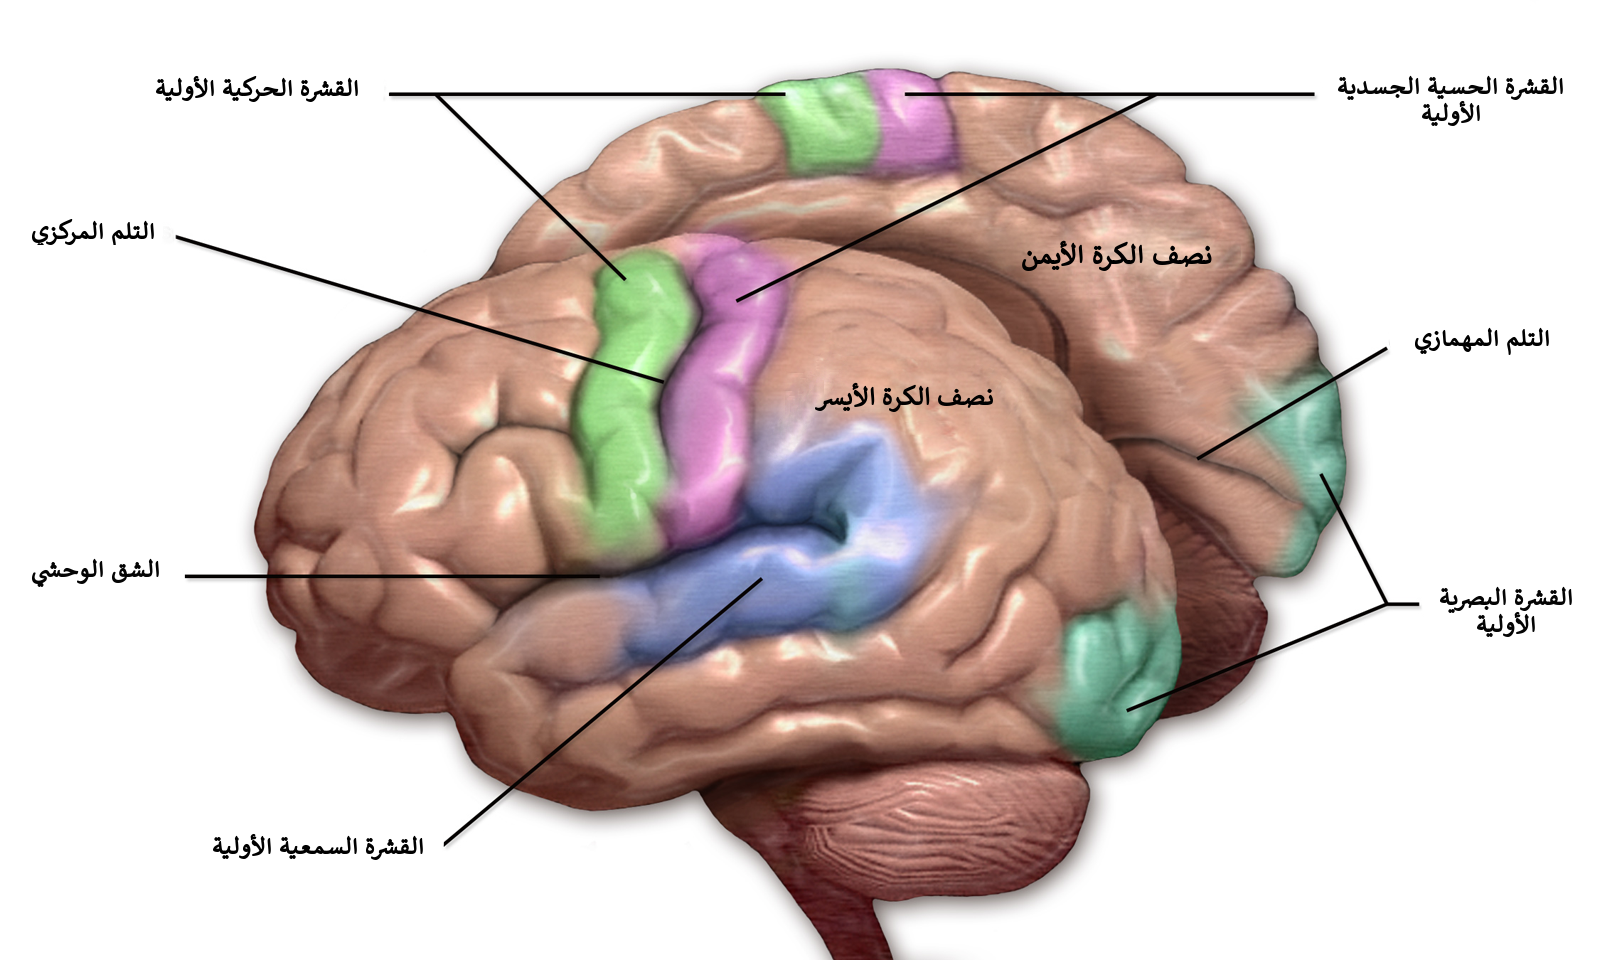 Brain 103. Соматосенсорные зоны мозга. Проекционные зоны коры головного мозга. Сенсорная зона коры головного мозга.